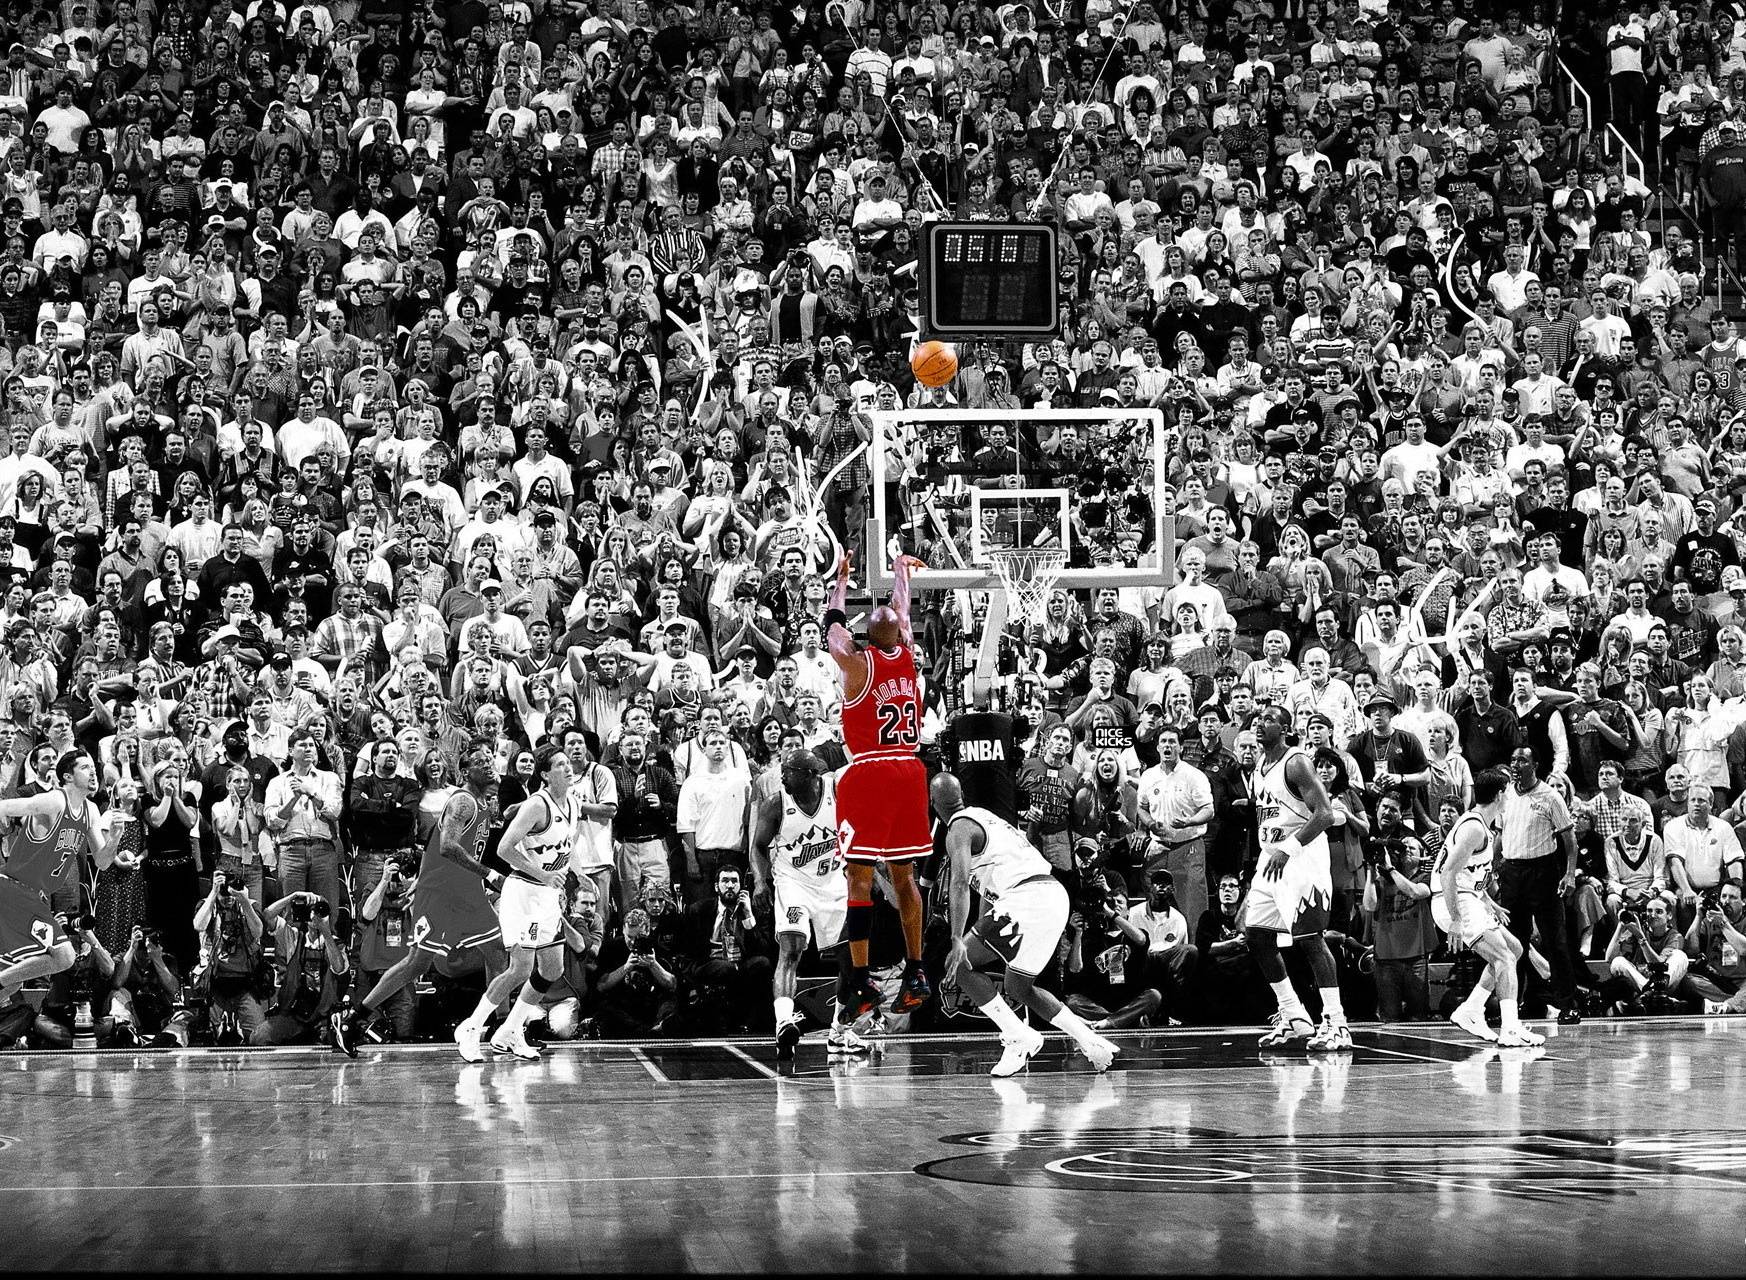 Free Michael Jordan desktop image. Chicago Bulls wallpaper